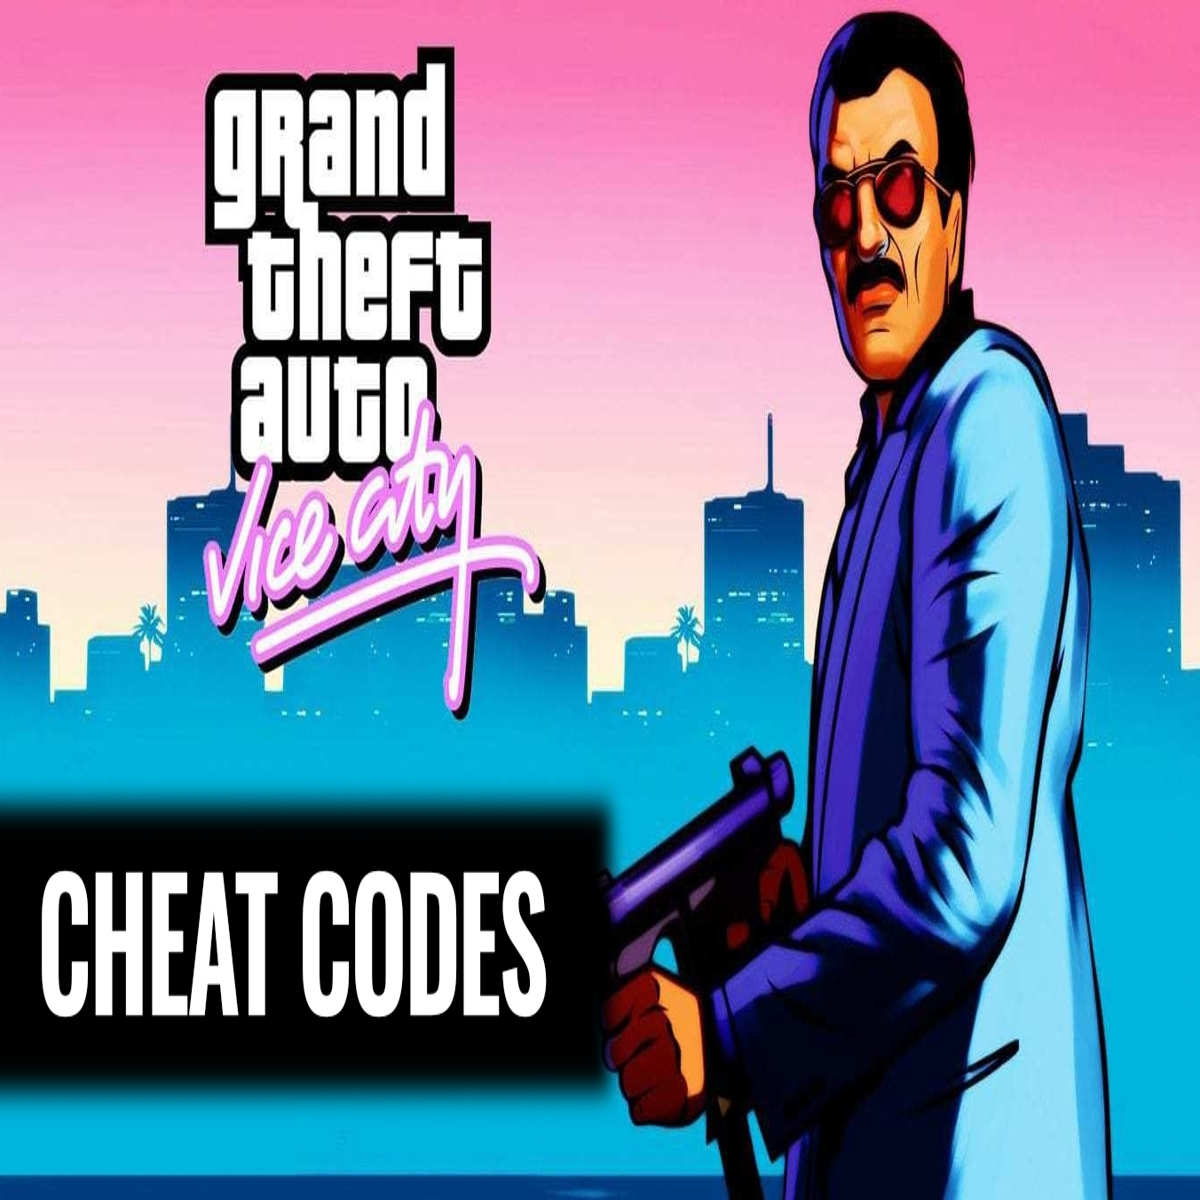 GTA V - Código para ter todas as armas do game (All weapons cheat)